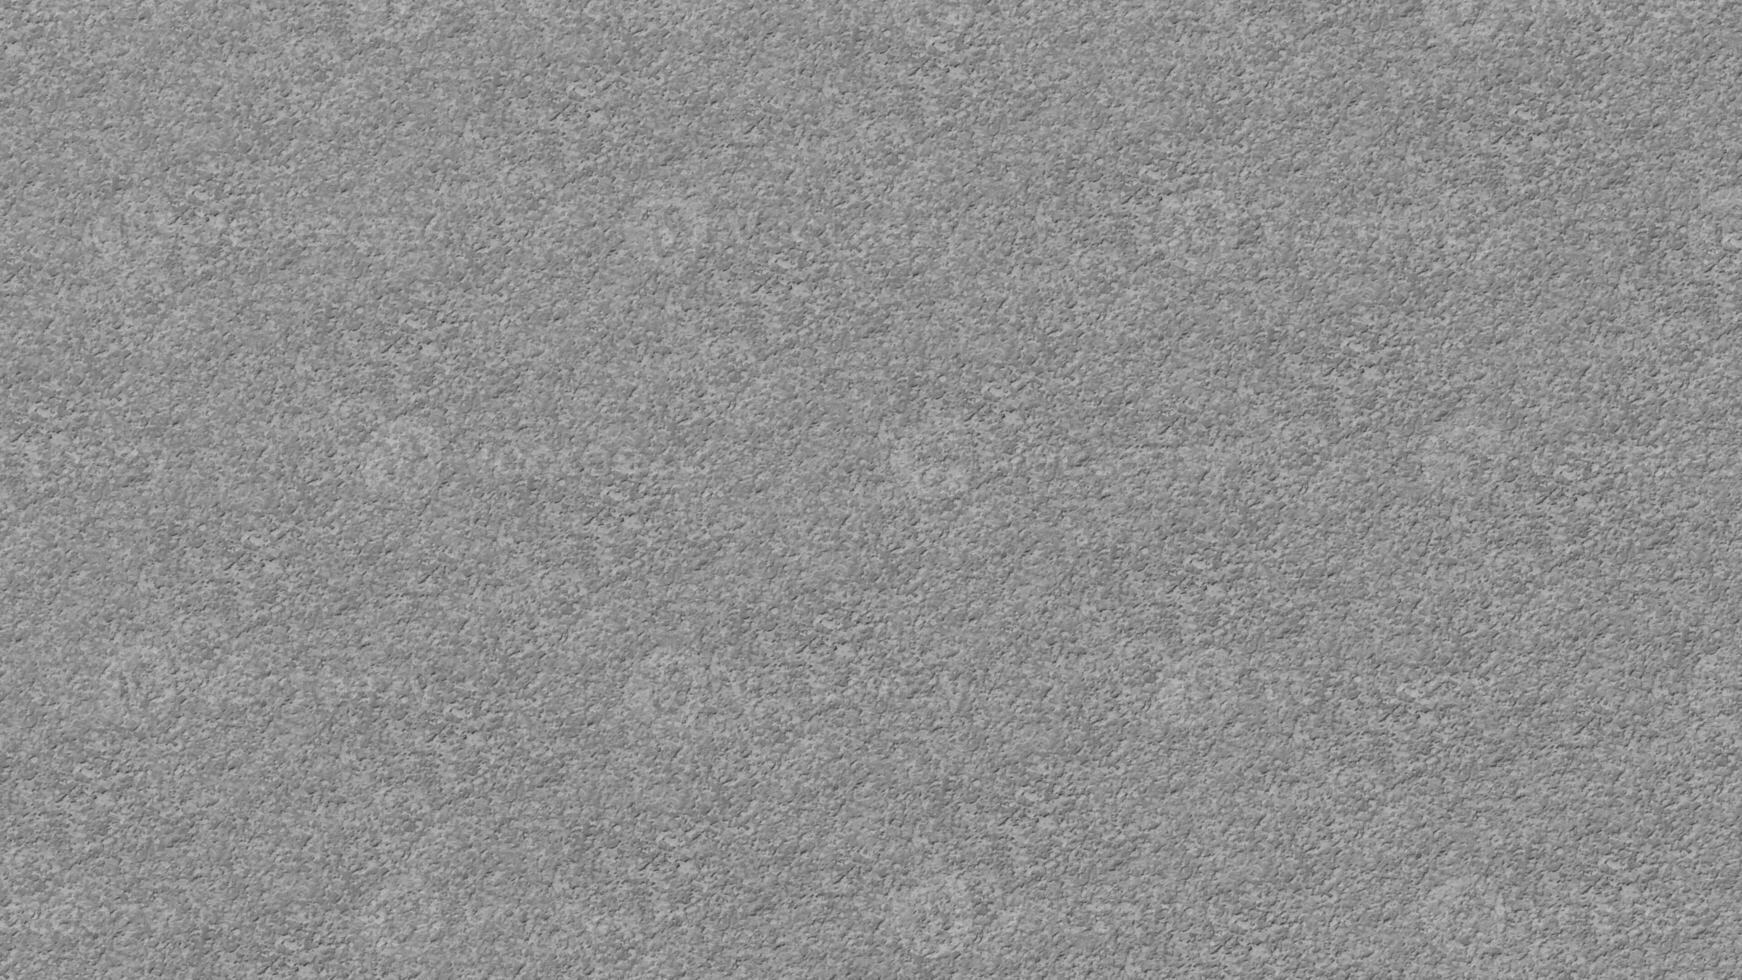 textura de piedra gris para fondo o cubierta foto